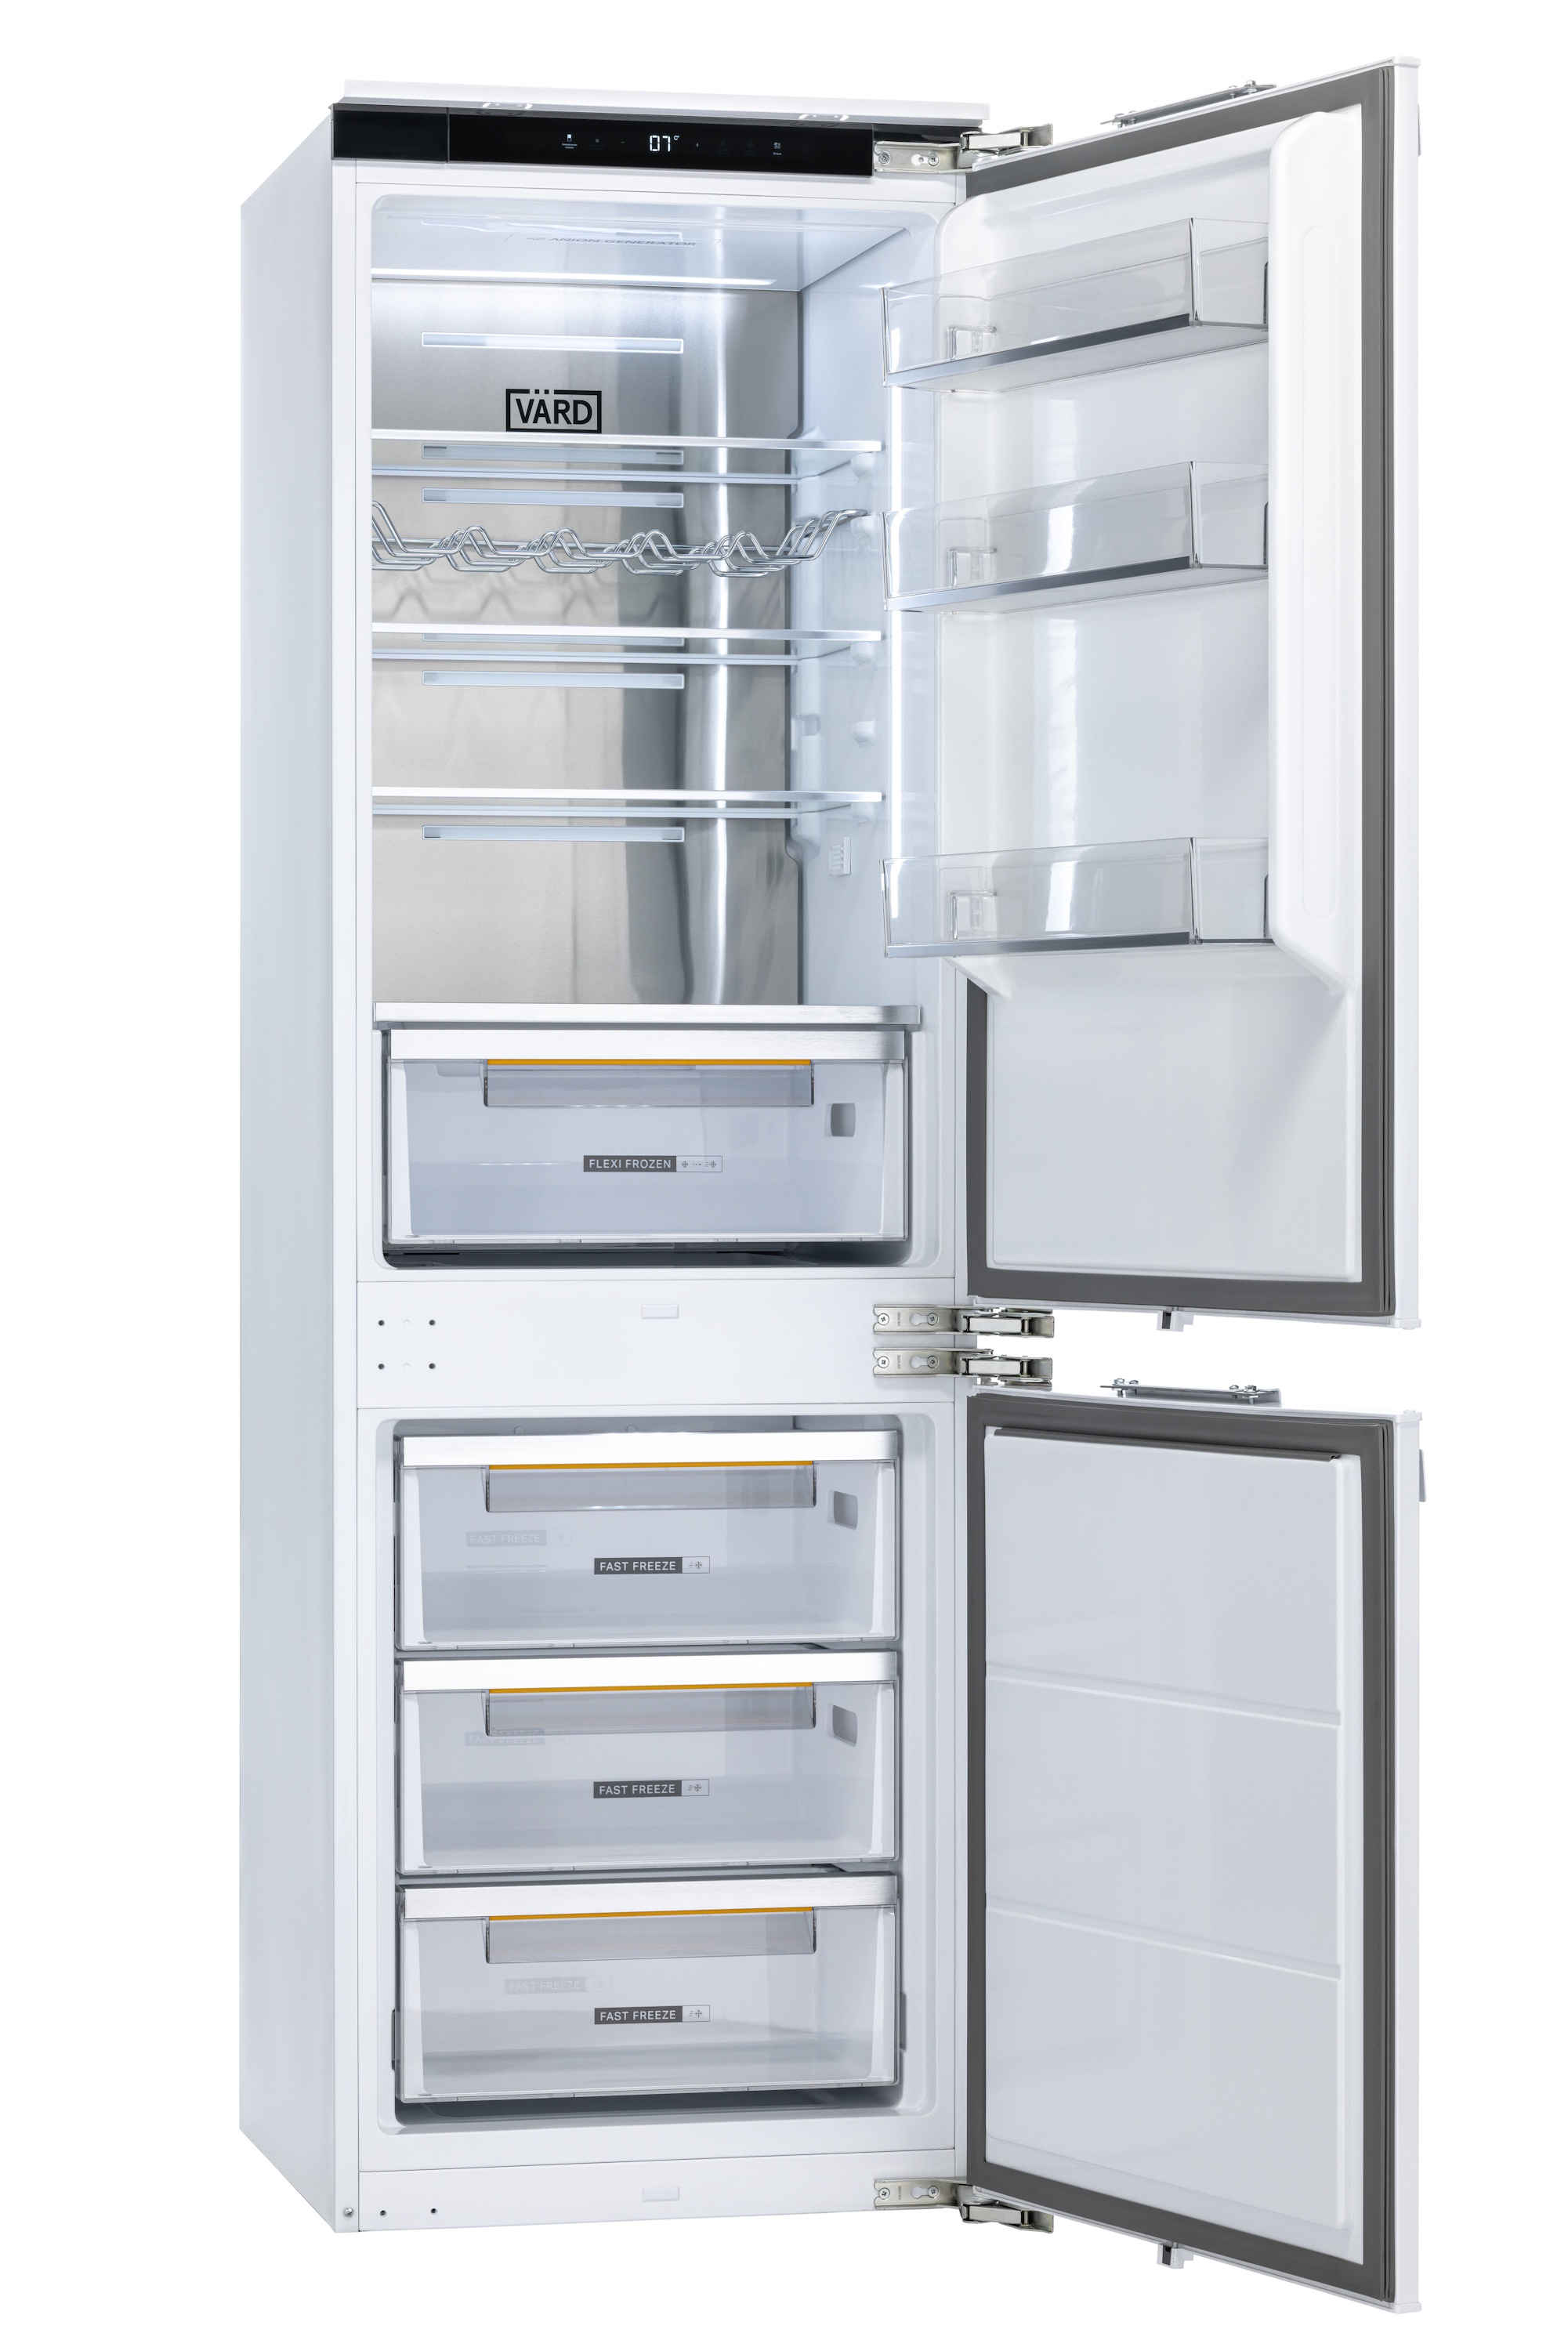 Встраиваемый холодильник Vard VIC177NI белый квадрокоптер cfly faith 2s с камерой 4k hd трехосевой системой стабилизации камеры и gps